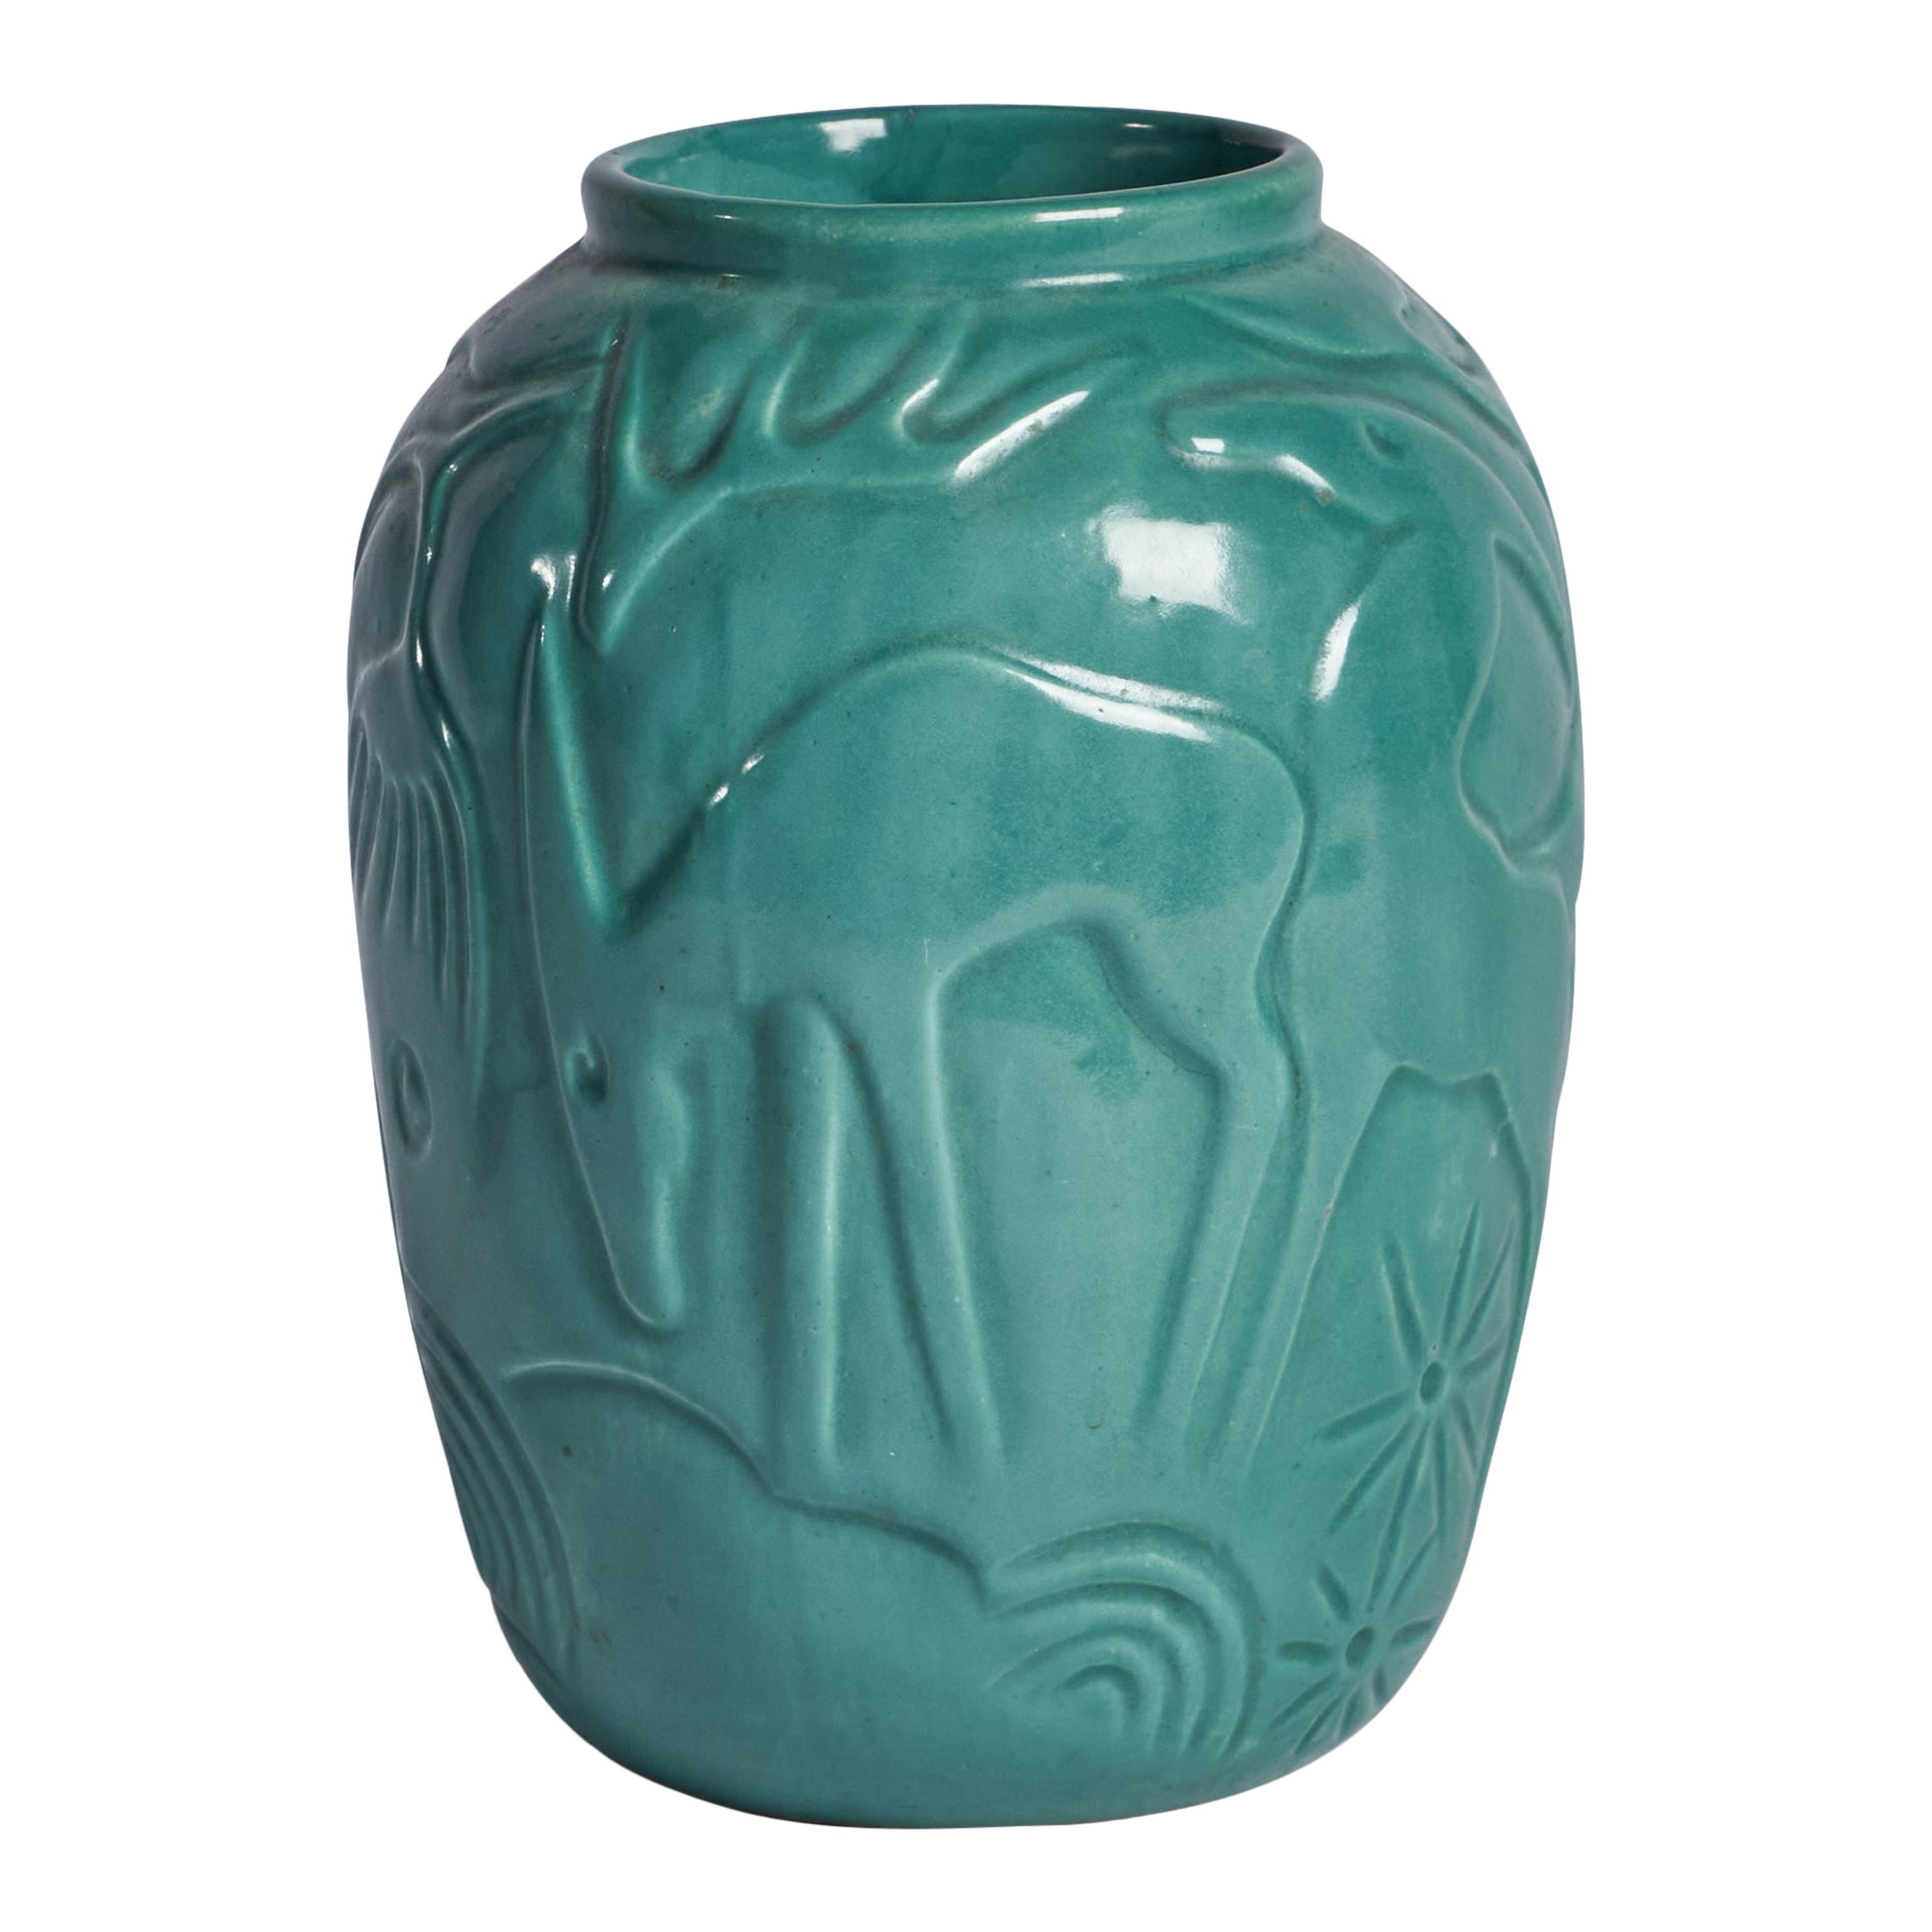 Syco Keramik, Vase, Ceramic, Sweden, 1930s